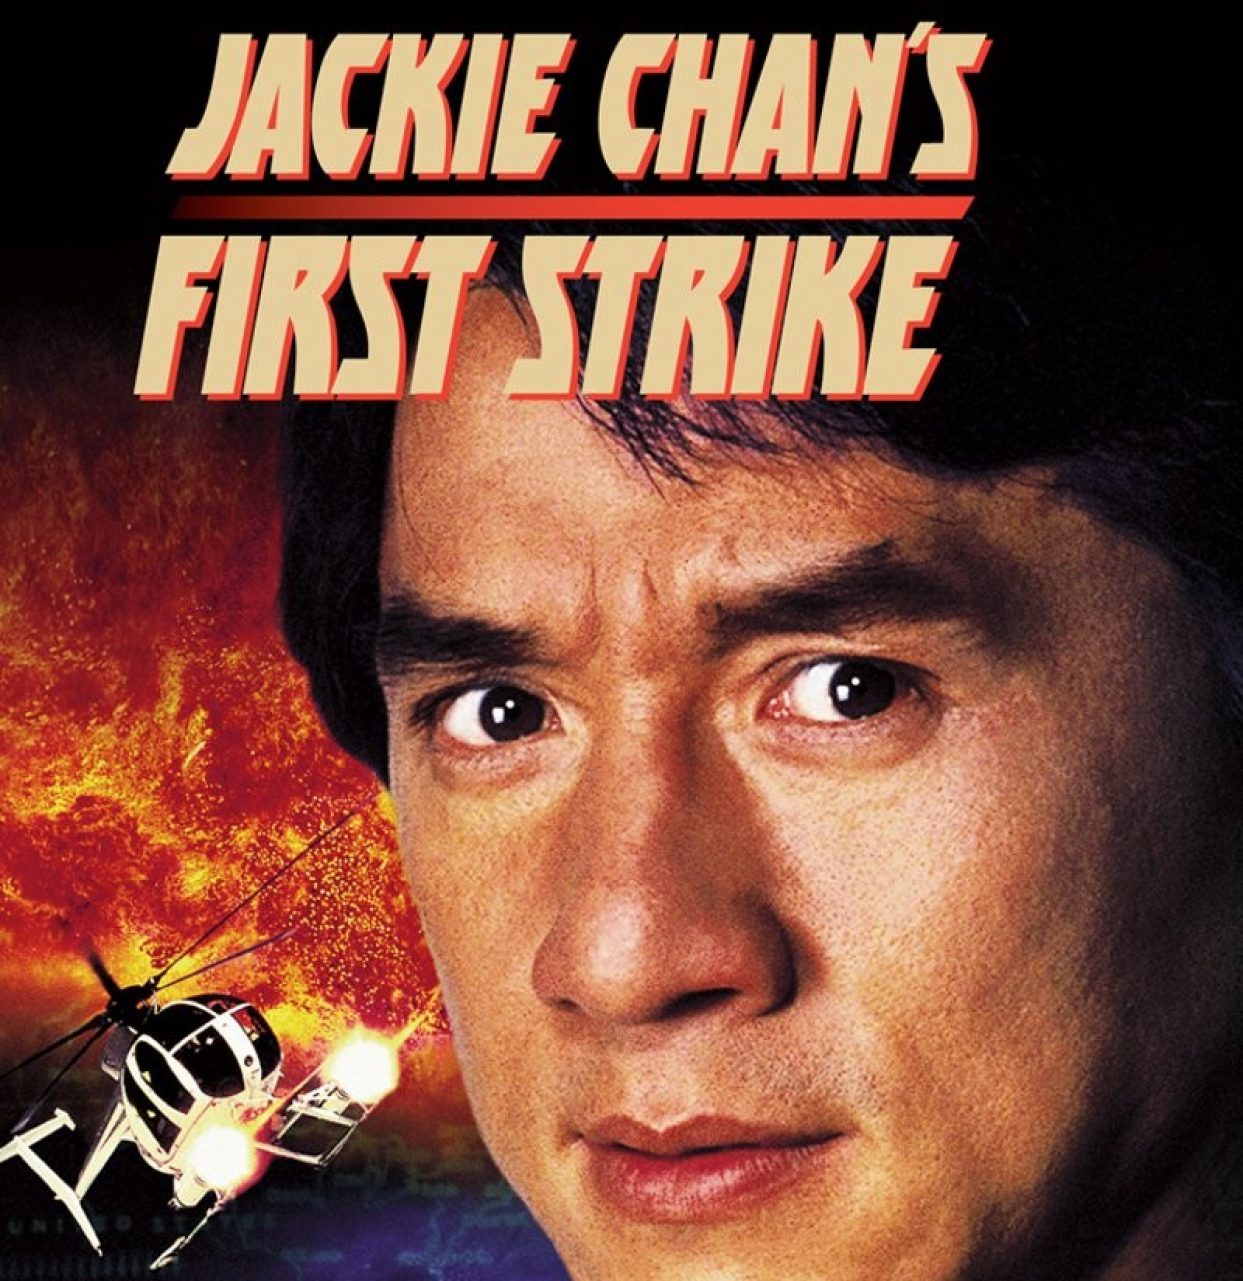 Police Story 4: First Strike (1996)